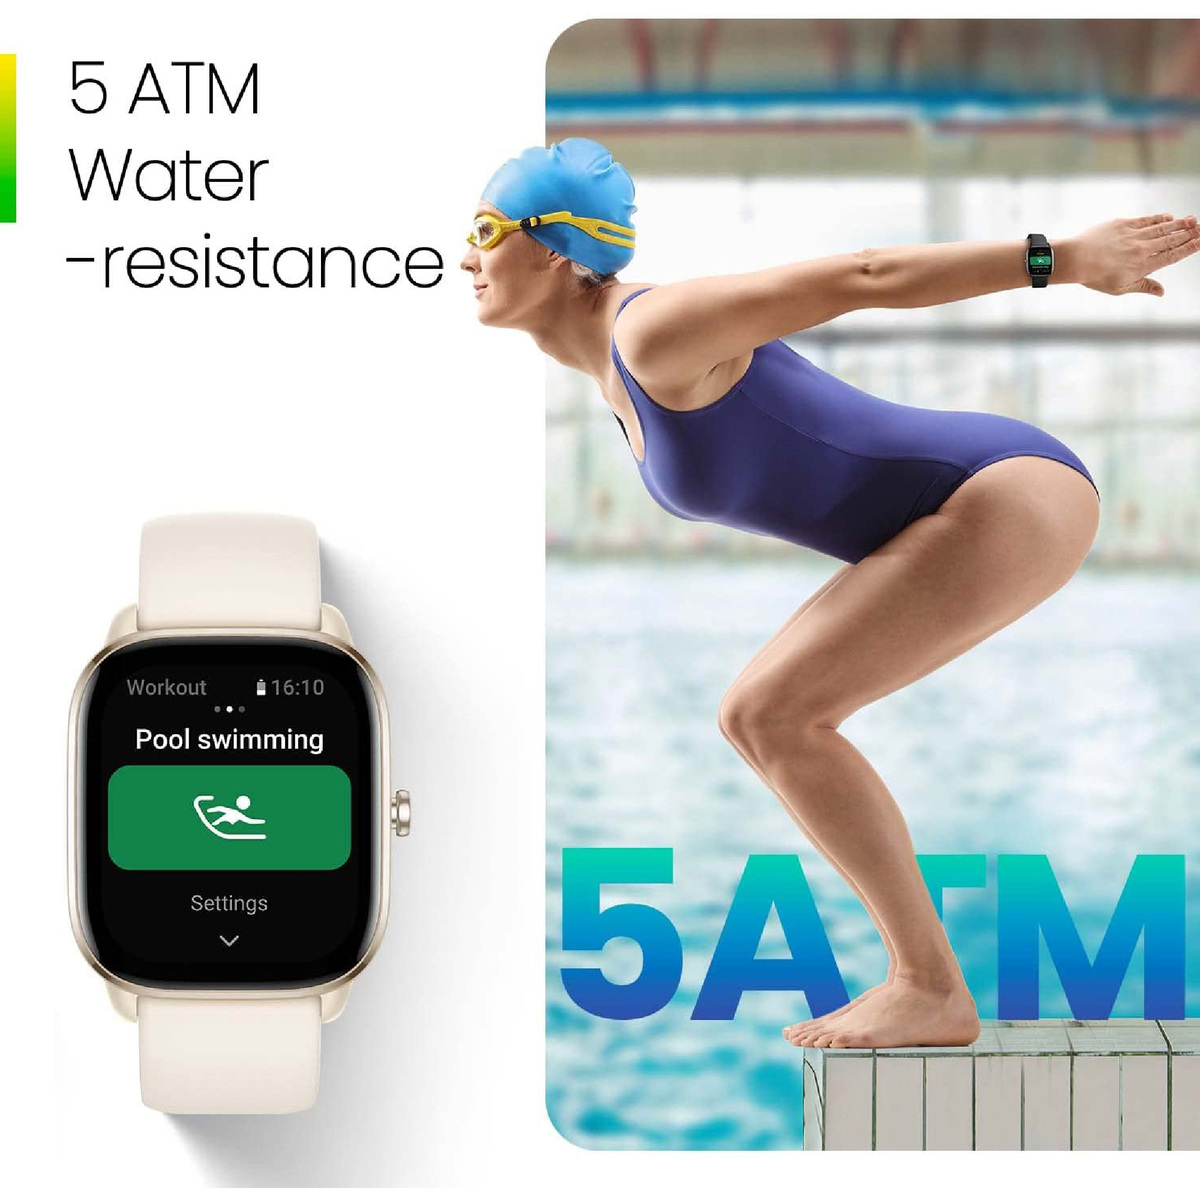 أمازفيت جي تي اس 4 ميني ساعة ذكية للنساء والرجال، أليكسا مدمج، ، GPS ، جهاز تتبع اللياقة البدنية مع 120+ وضع رياضي، بطارية تدوم 15 يومًا، مراقب الأكسجين في الدم معدل ضربات القلب، متوافق هاتف أندرويد مع آيفون - أزرق